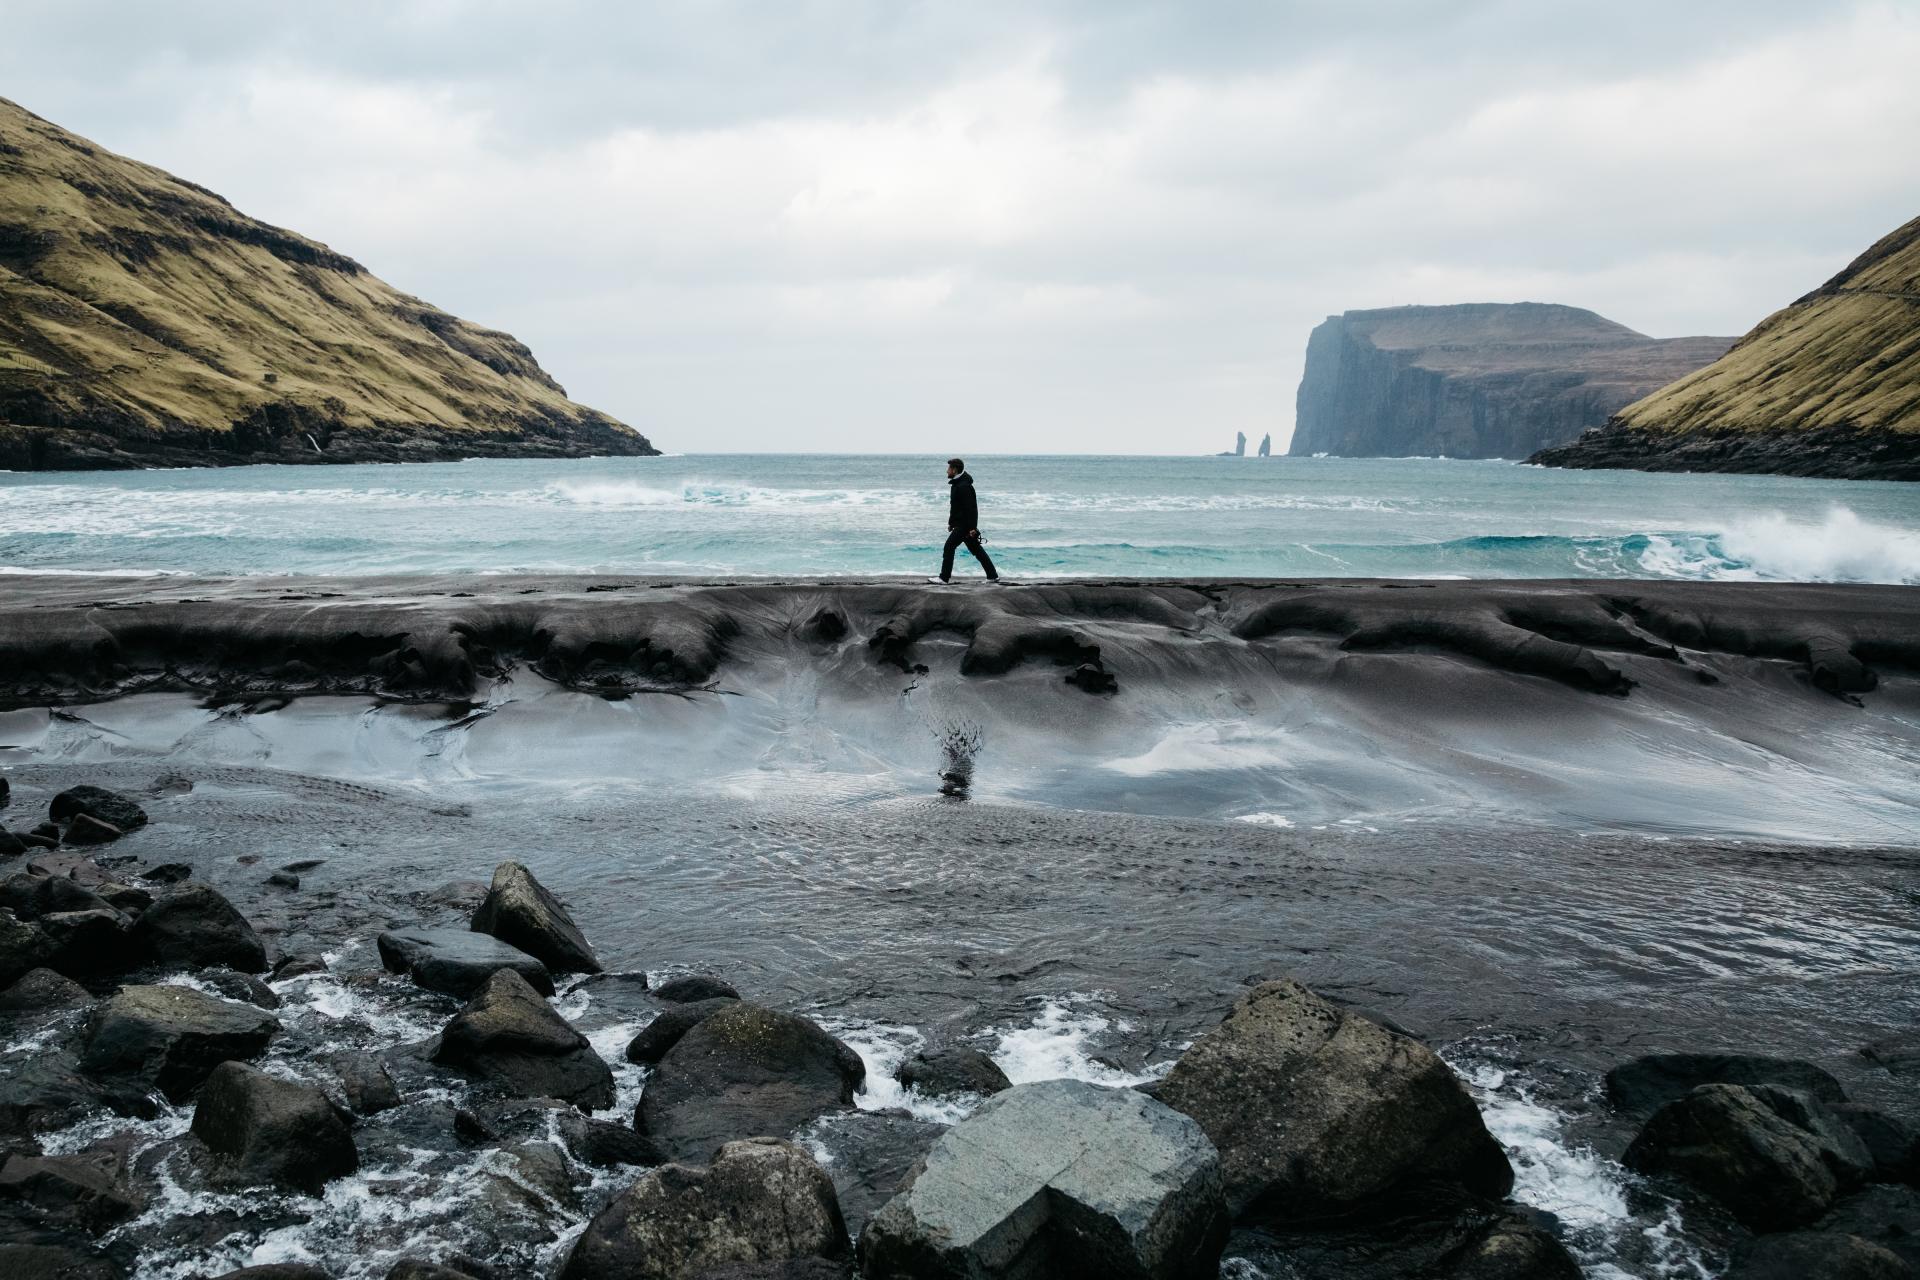 Thumbnail of - Man walking on the beach in Tjørnuvík, Faroe Islands. Scenic view of the sea, waves & rocks. Taken by Manuela Palmberger